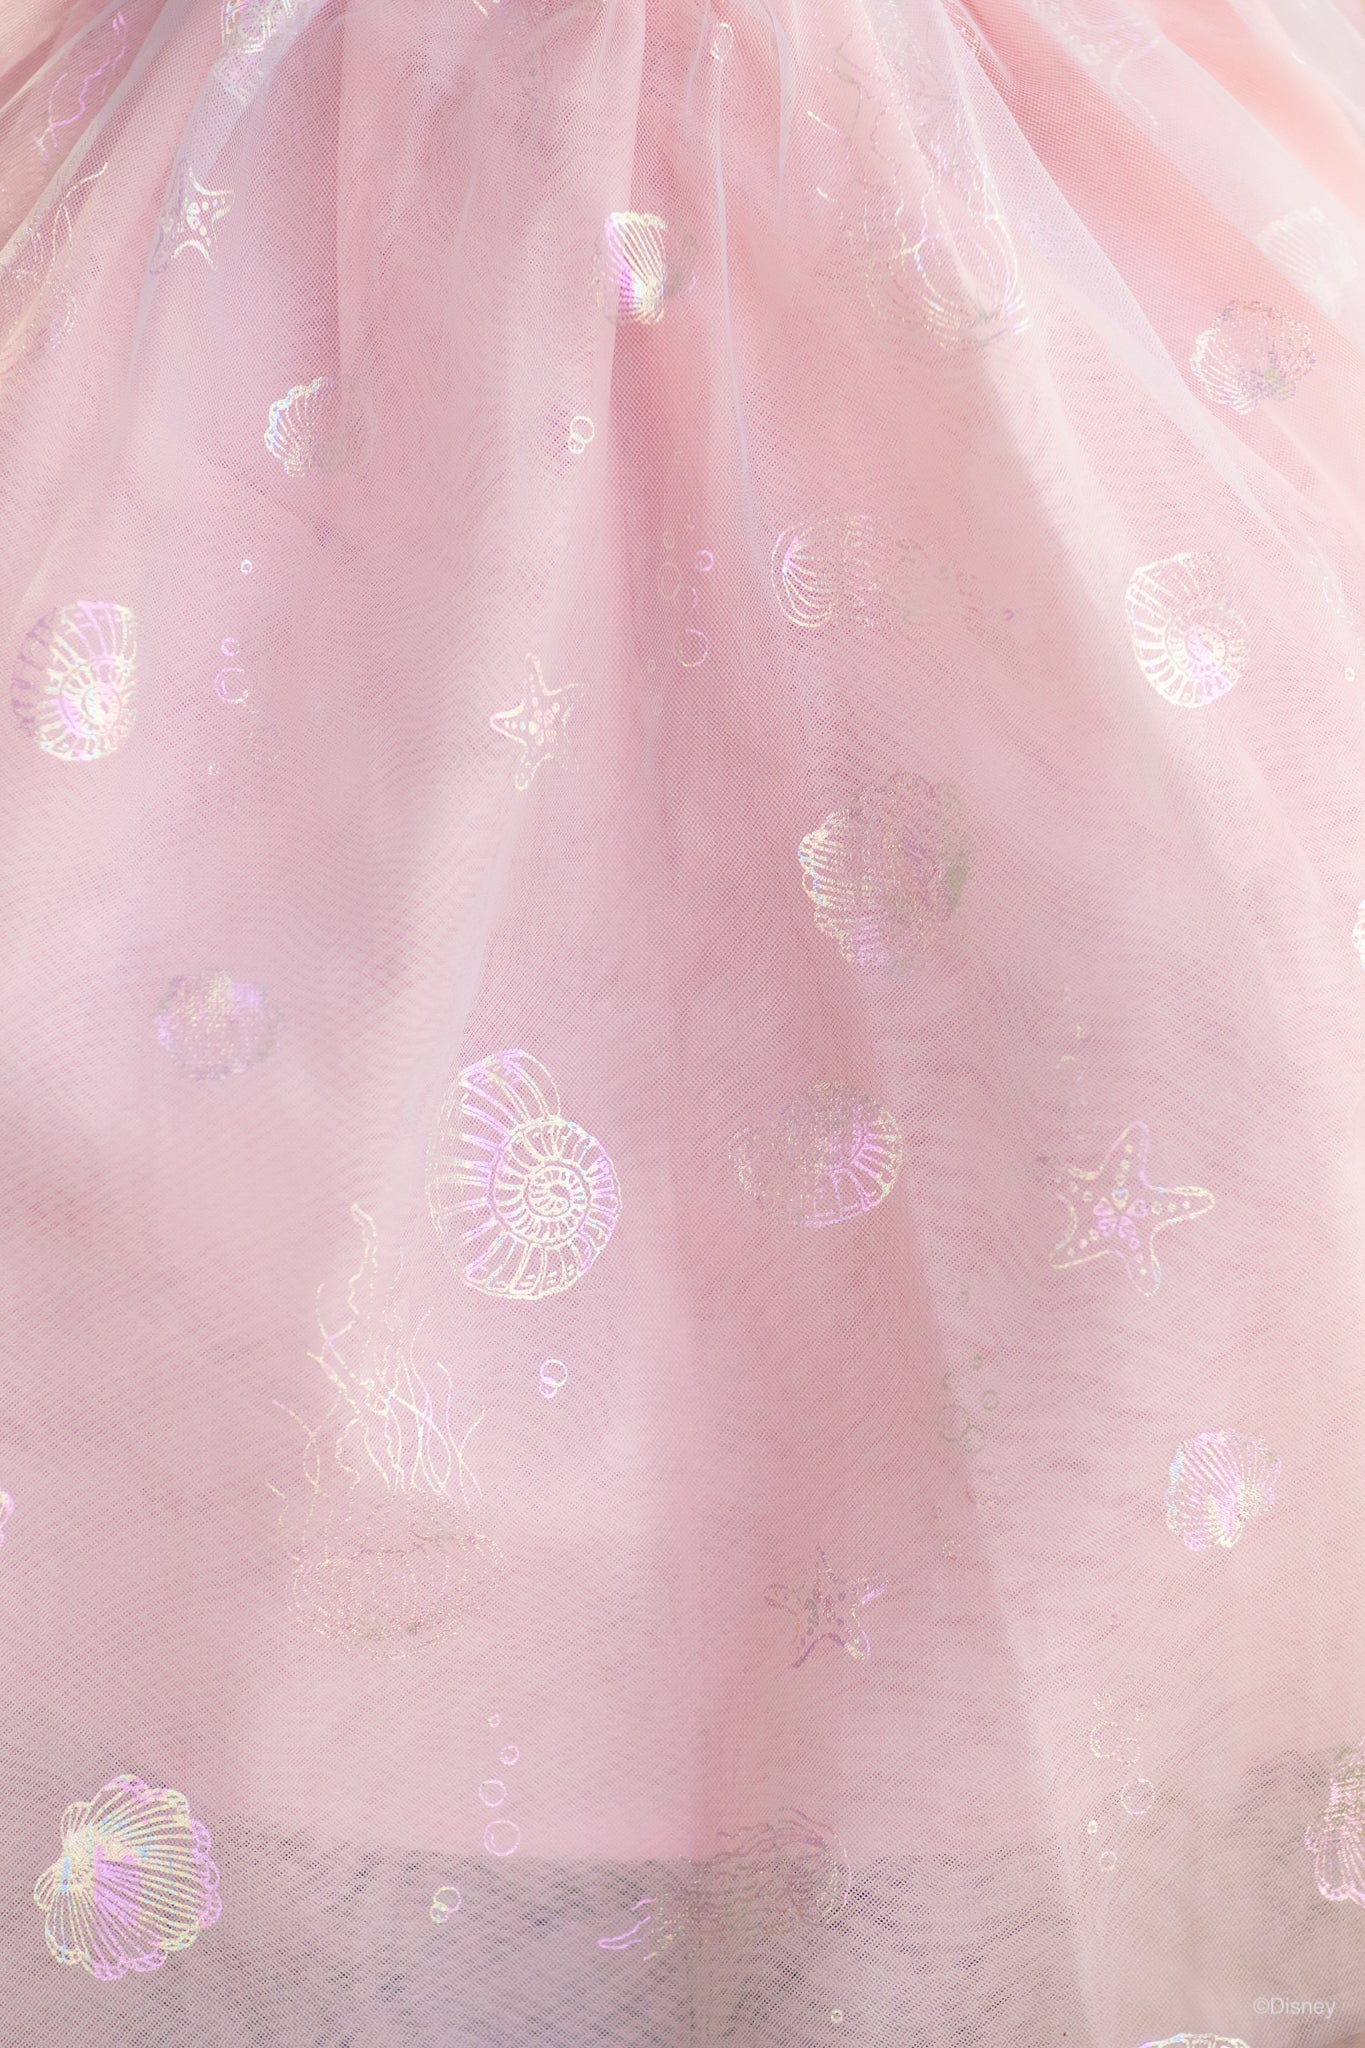 Colette Dress - Princess Flowers